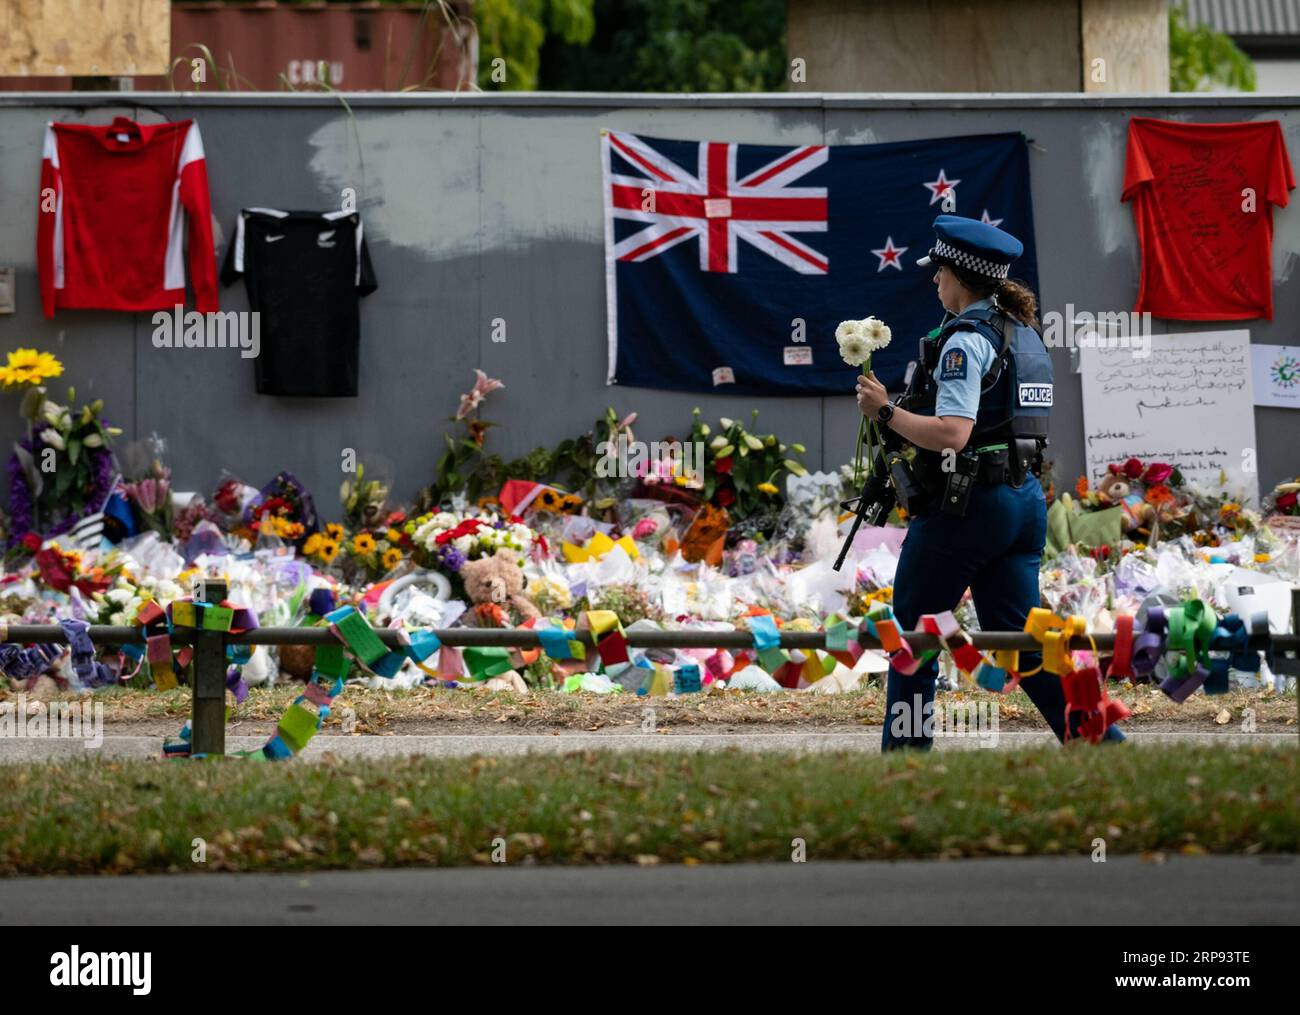 (190322) - WELLINGTON, 22 marzo 2019 (Xinhua) - Una poliziotta tiene fiori durante una cerimonia di lutto a Christchurch, nuova Zelanda, 22 marzo 2019. Una settimana dopo gli attacchi terroristici di Christchurch, i neozelandesi in tutto il paese si sono riuniti in due minuti di silenzio per ricordare coloro che erano stati uccisi mentre adoravano due moschee venerdì pomeriggio. (Xinhua/Zhu Qiping) NUOVA ZELANDA-CHRISTCHURCH ATTACCHI TERRORISTICI-LUTTO PUBLICATIONxNOTxINxCHN Foto Stock